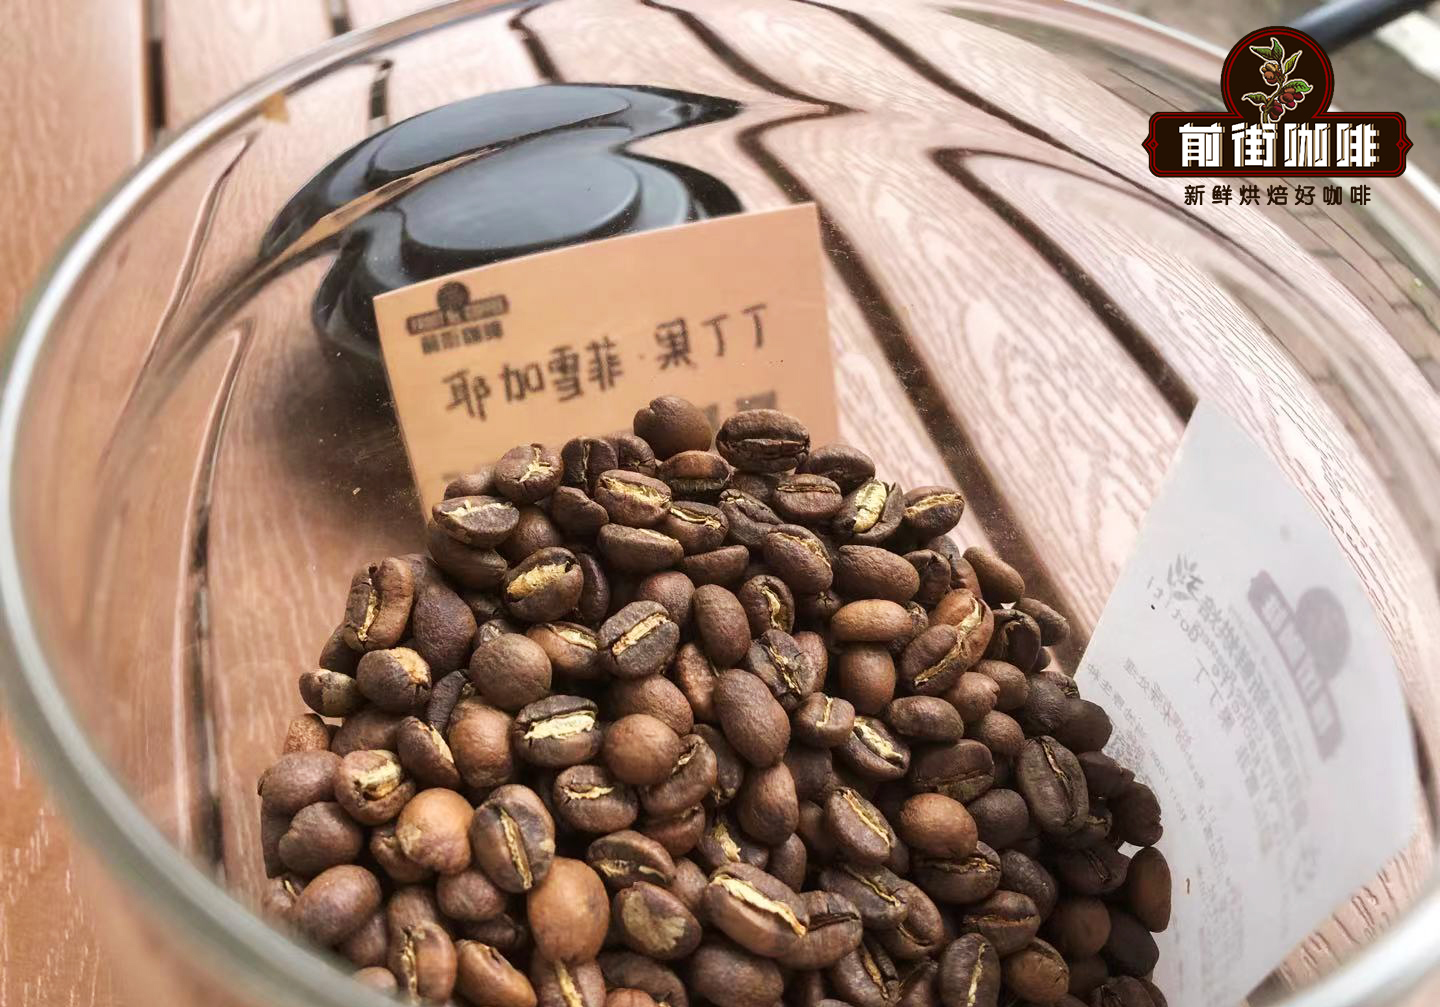 咖啡起源地埃塞俄比亚咖啡品种 非洲产区咖啡豆特点介绍